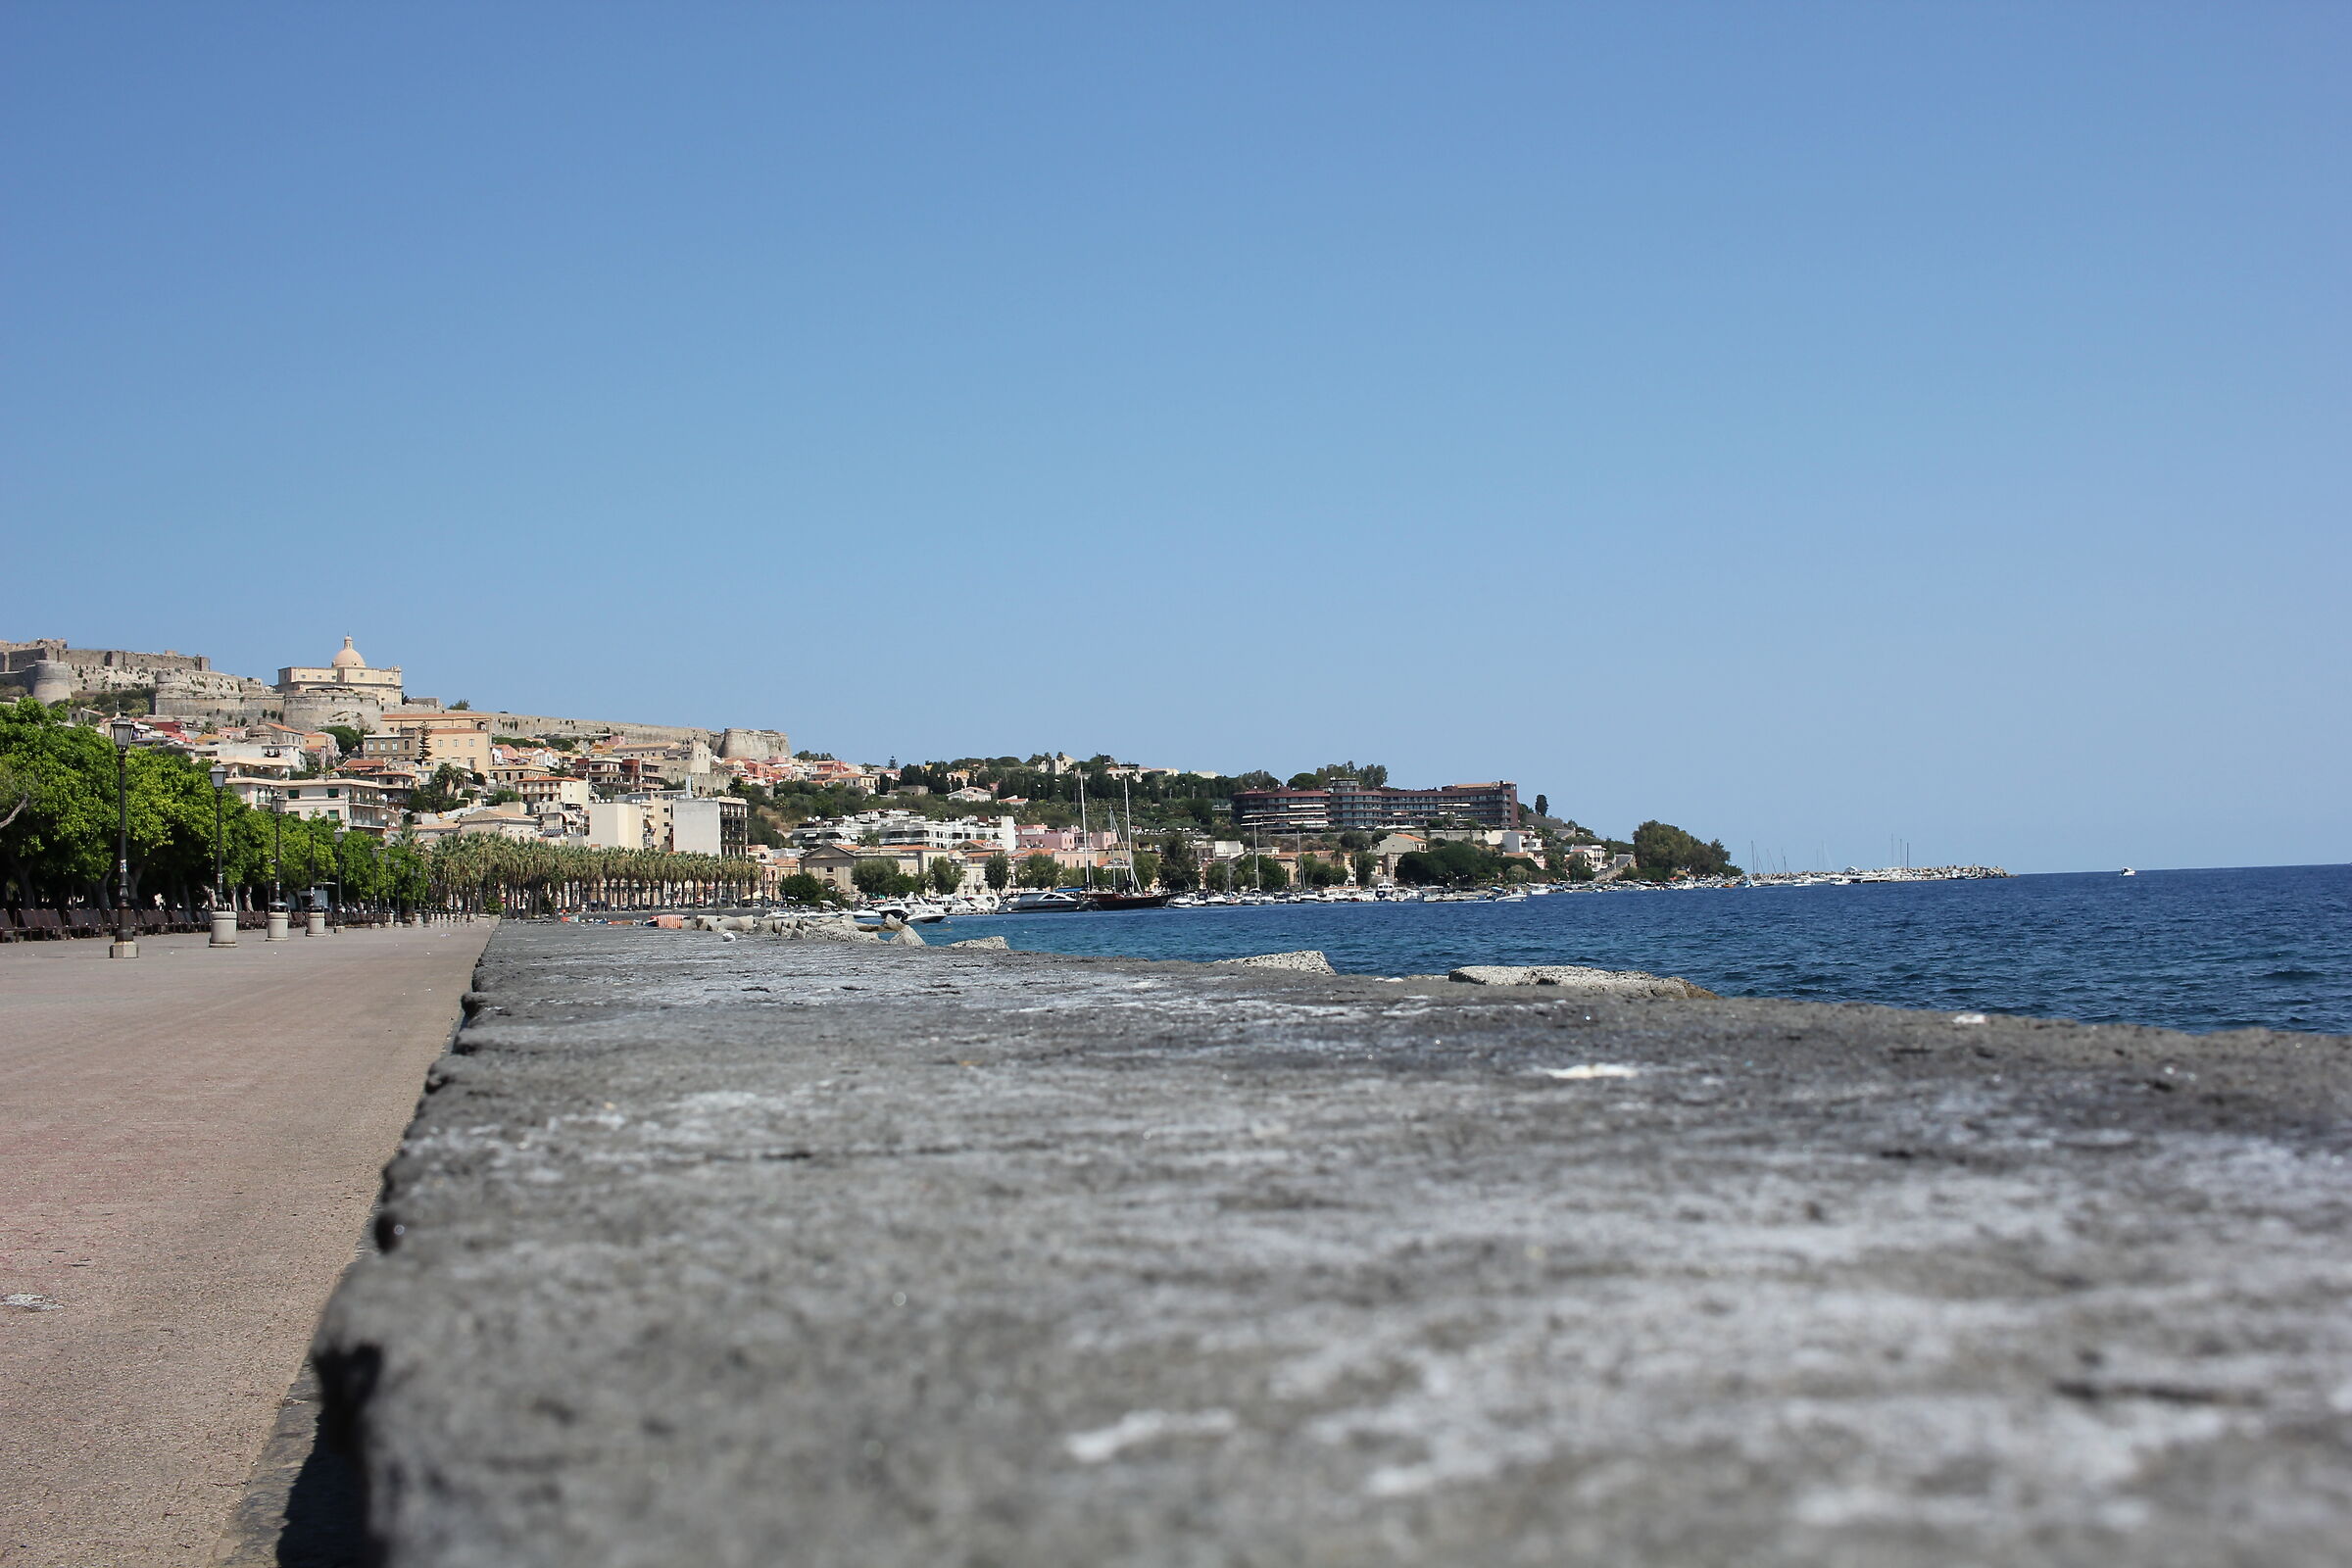 Passaggiata Marina Garibaldi in Milazzo - Sicily (ME)...